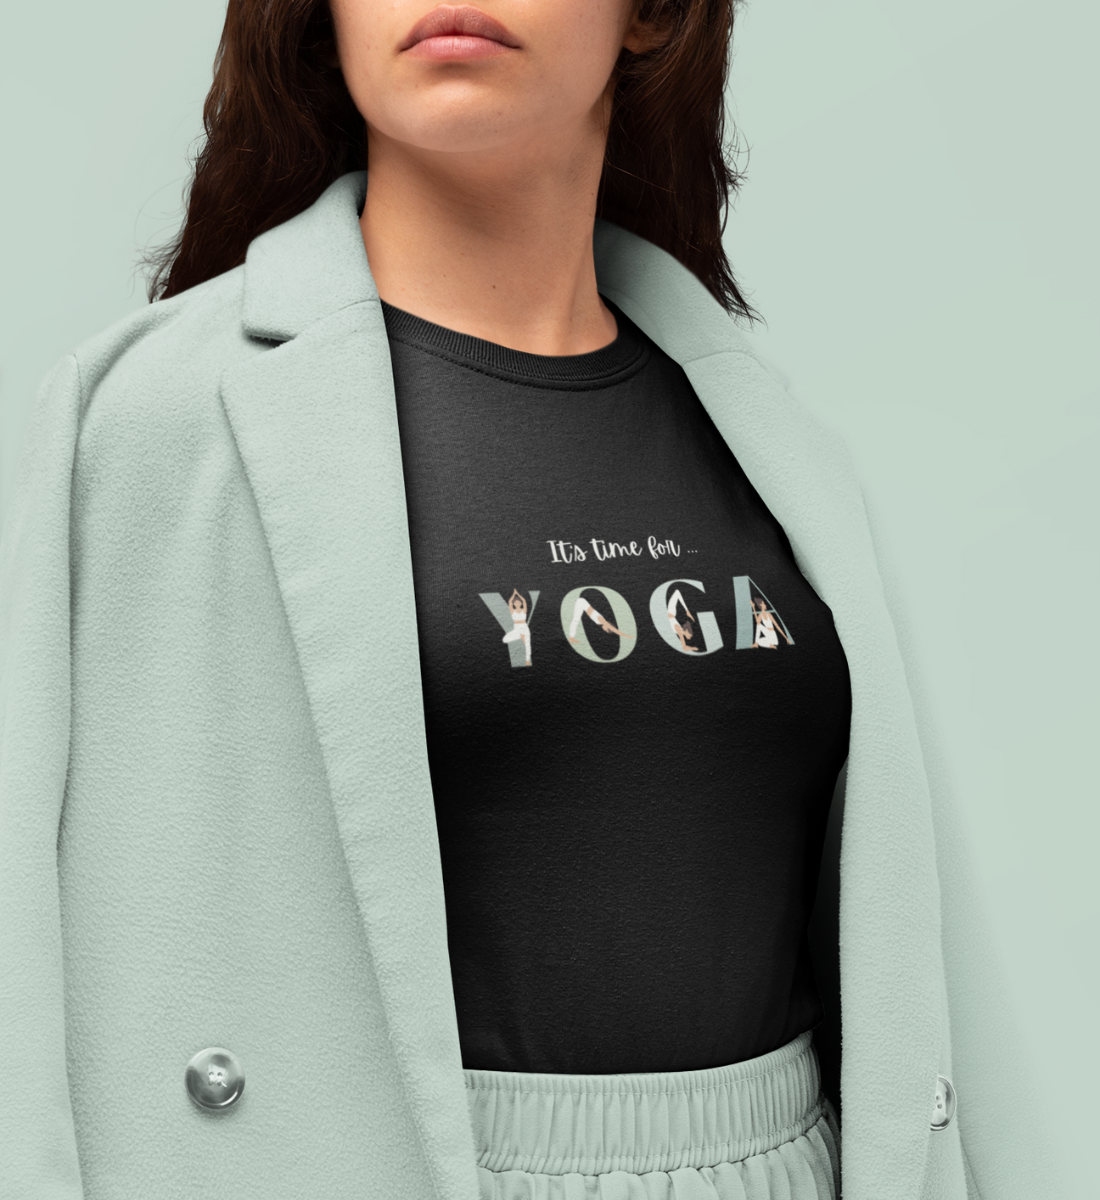 it's time for yoga l nachhaltiges t-shirt schwarz l yoga kleidung bio-baumwolle l nachhaltig einkaufen dank veganer mode